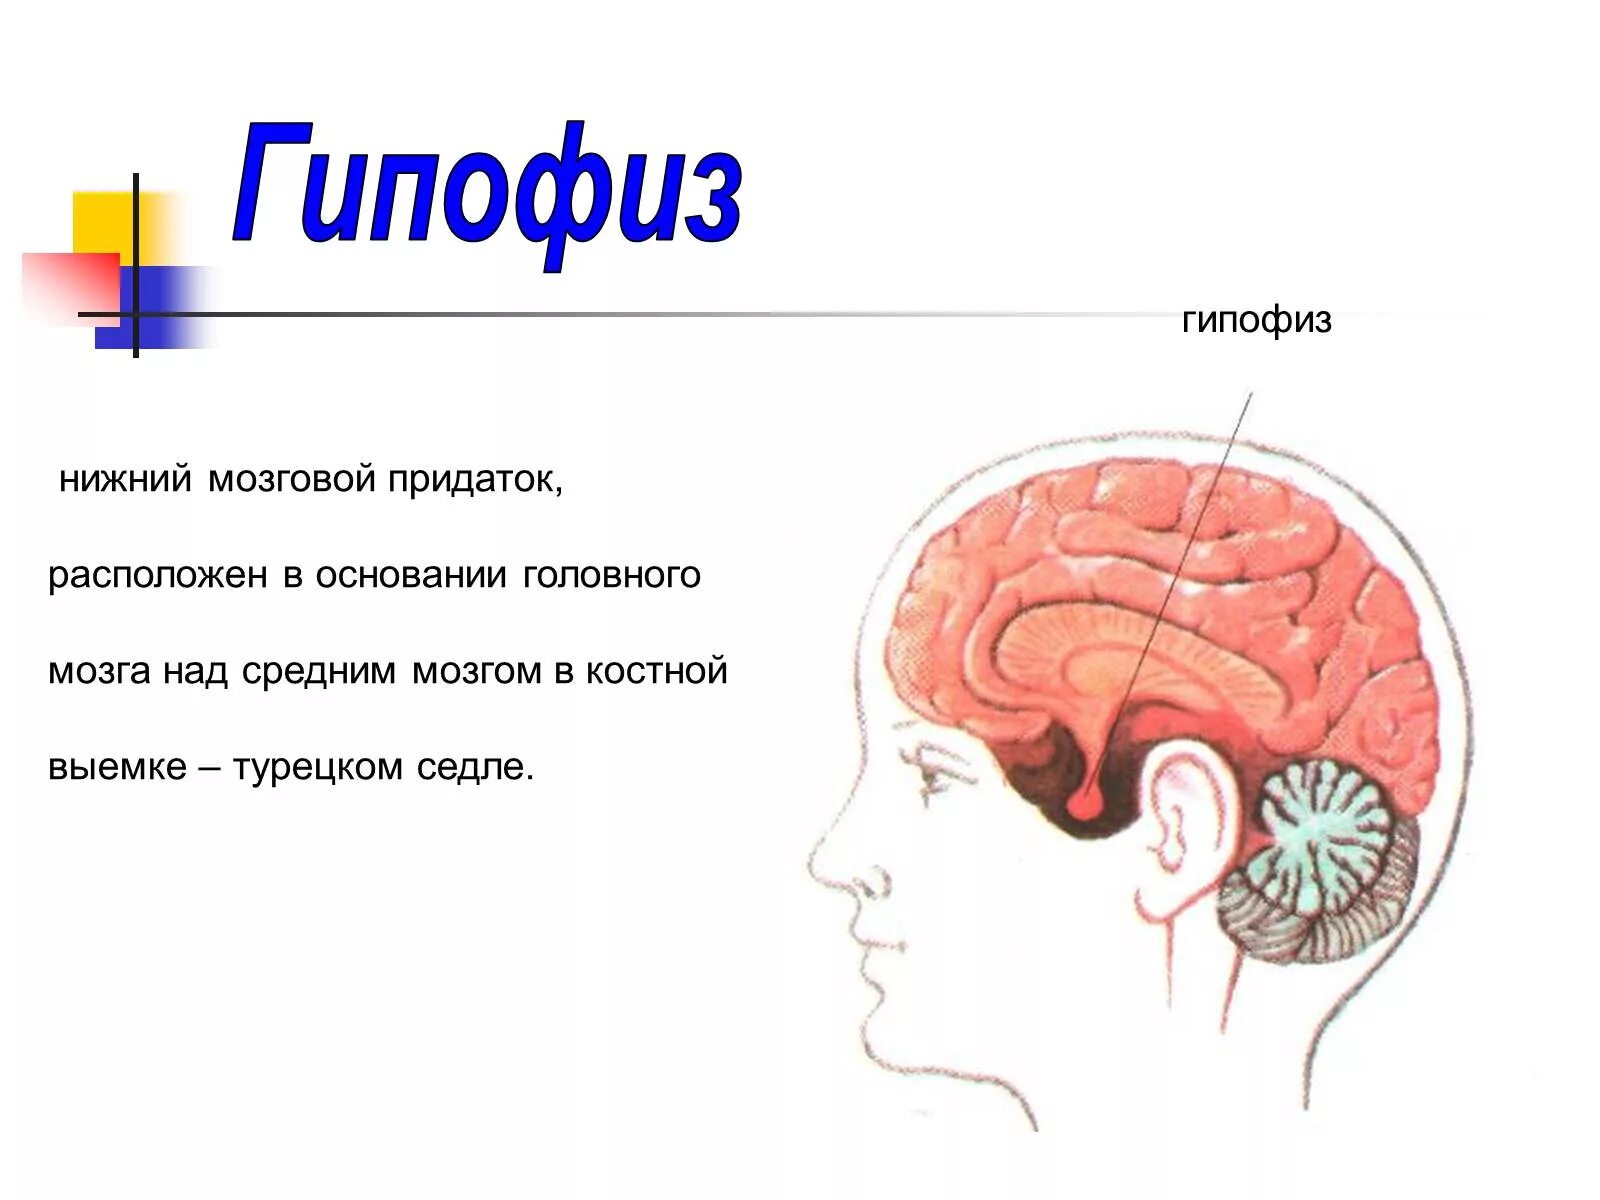 Гипофиз передний мозг. Головной мозг человека, гипофиз анатомия. Функции гипофиза головного мозга. Расположение гипофиза рисунок. Функции отделов головного мозга гипофиз.